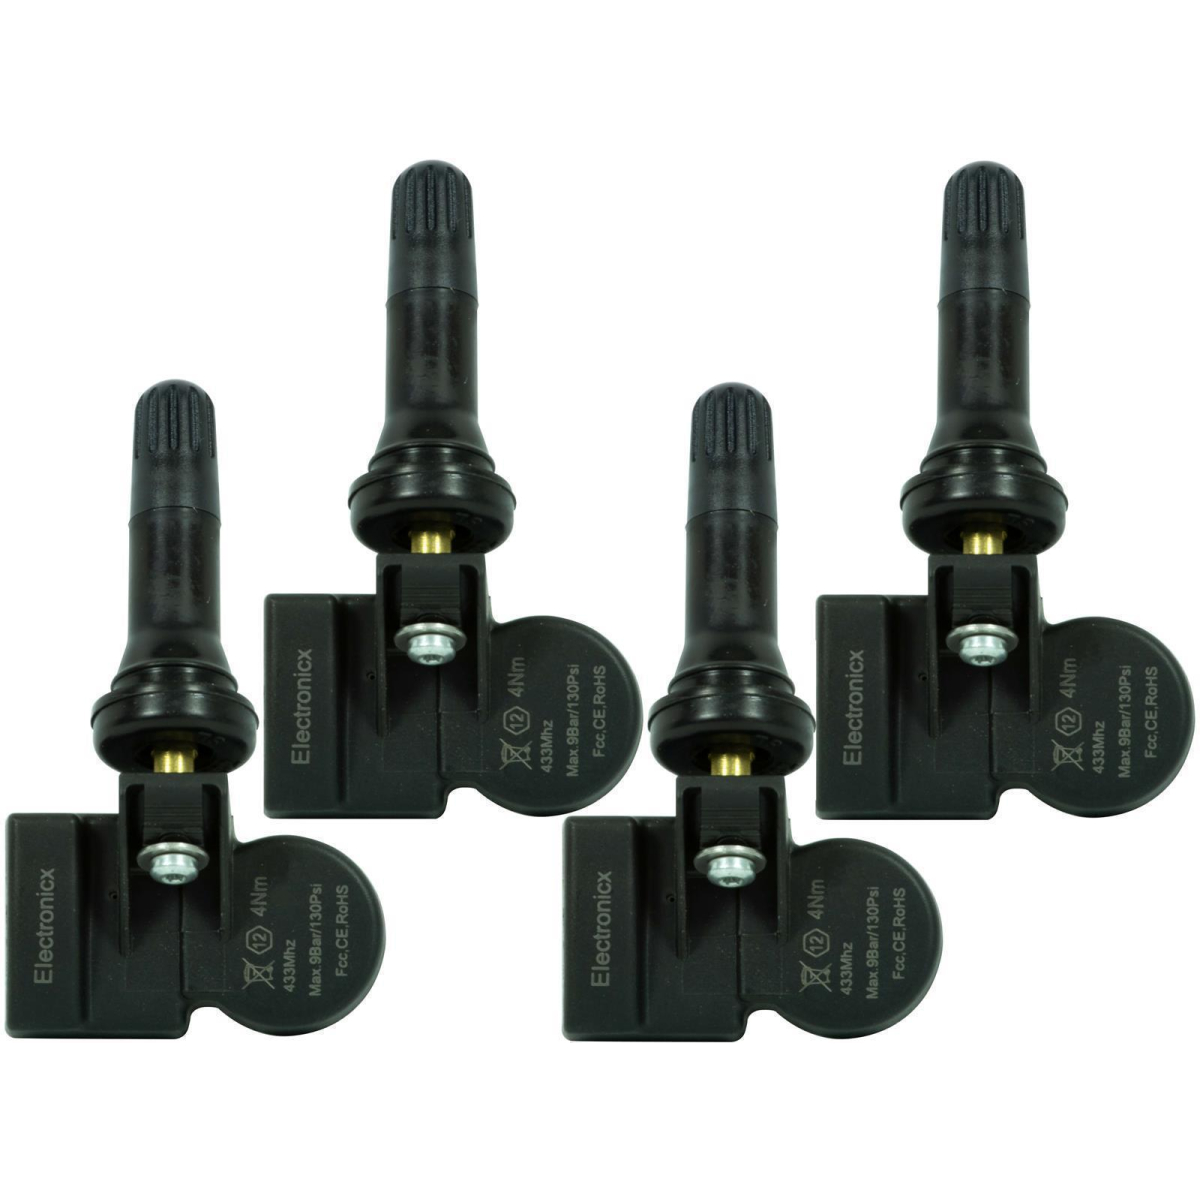 4 tire pressure sensors rdks sensors rubber valve for Opel/Vauxhall Ampera R12 07.2005-12.2015